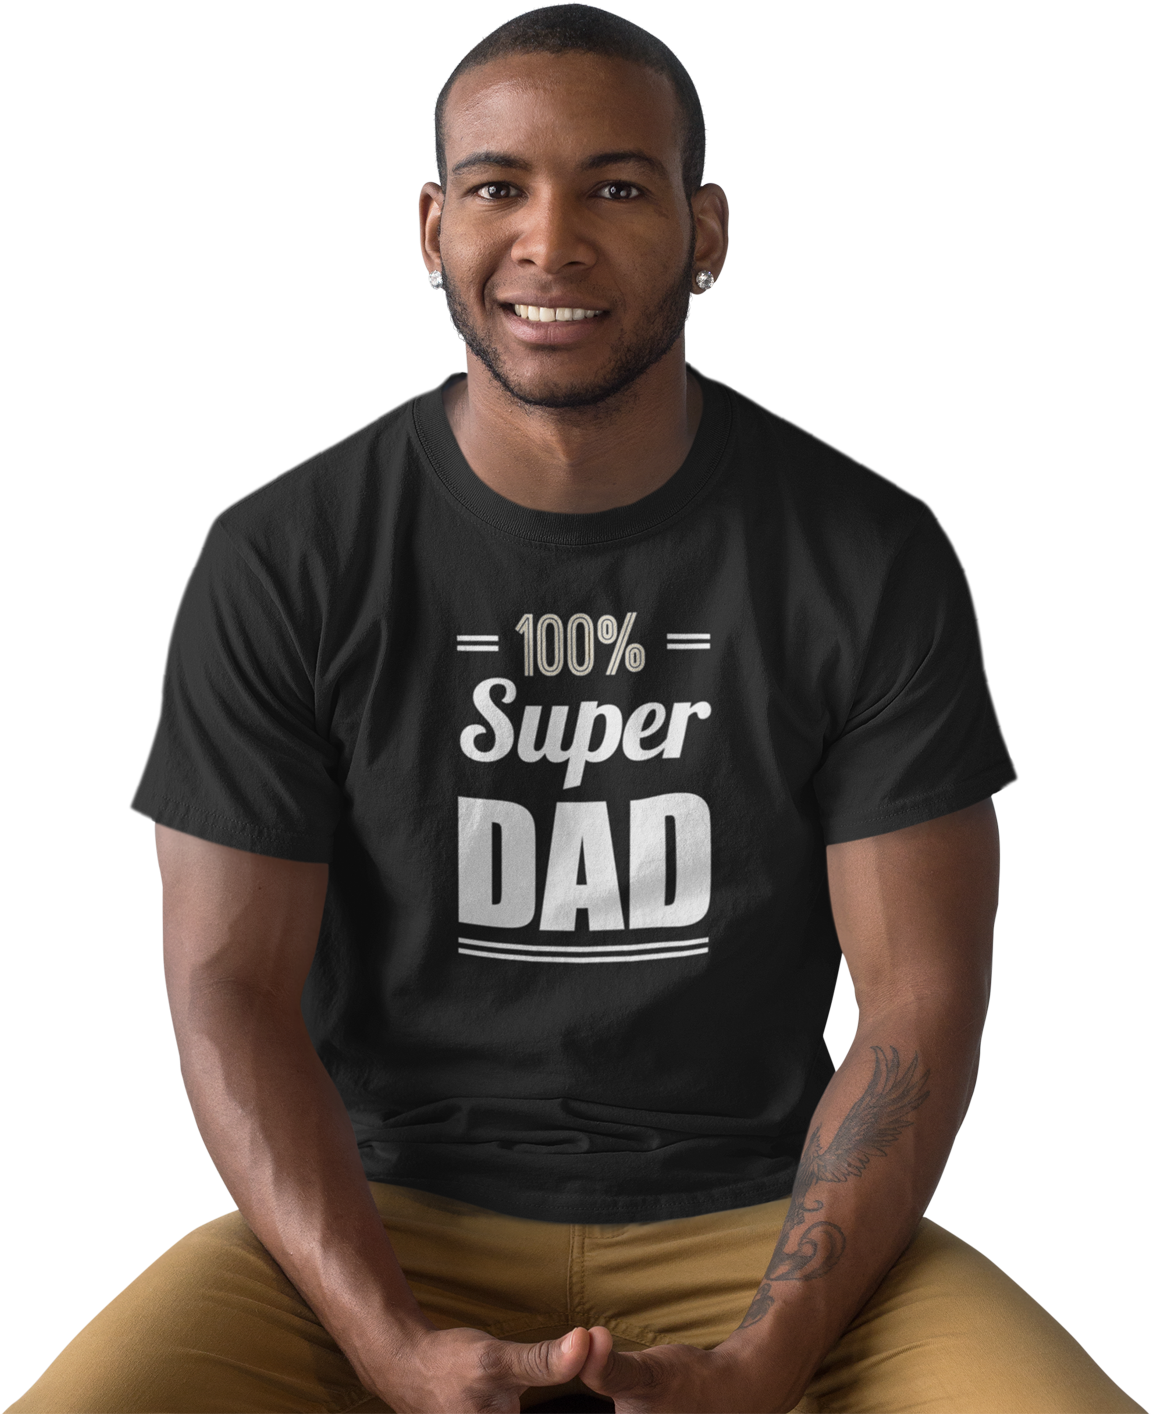 Super Dad T Shirt Man Sitting Smiling PNG image